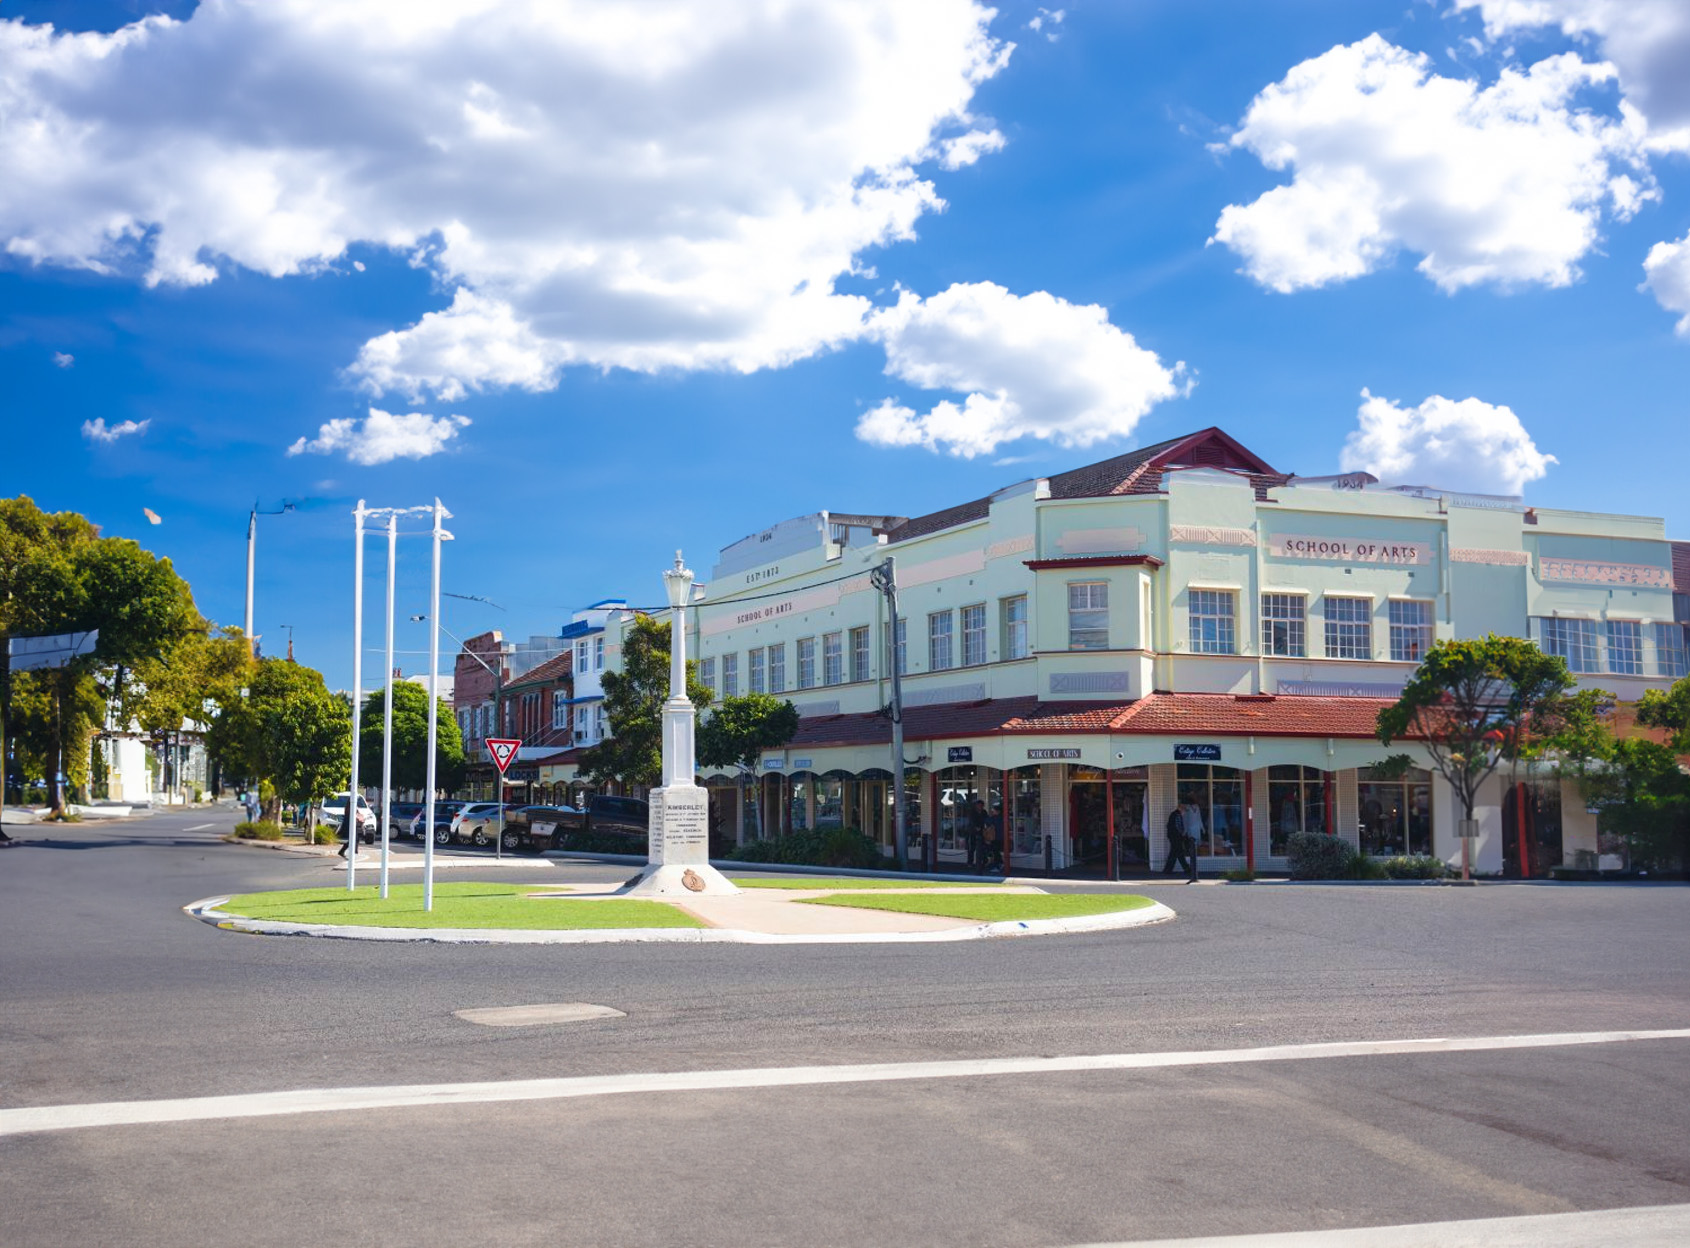 Casino, New South Wales - Wikipedia